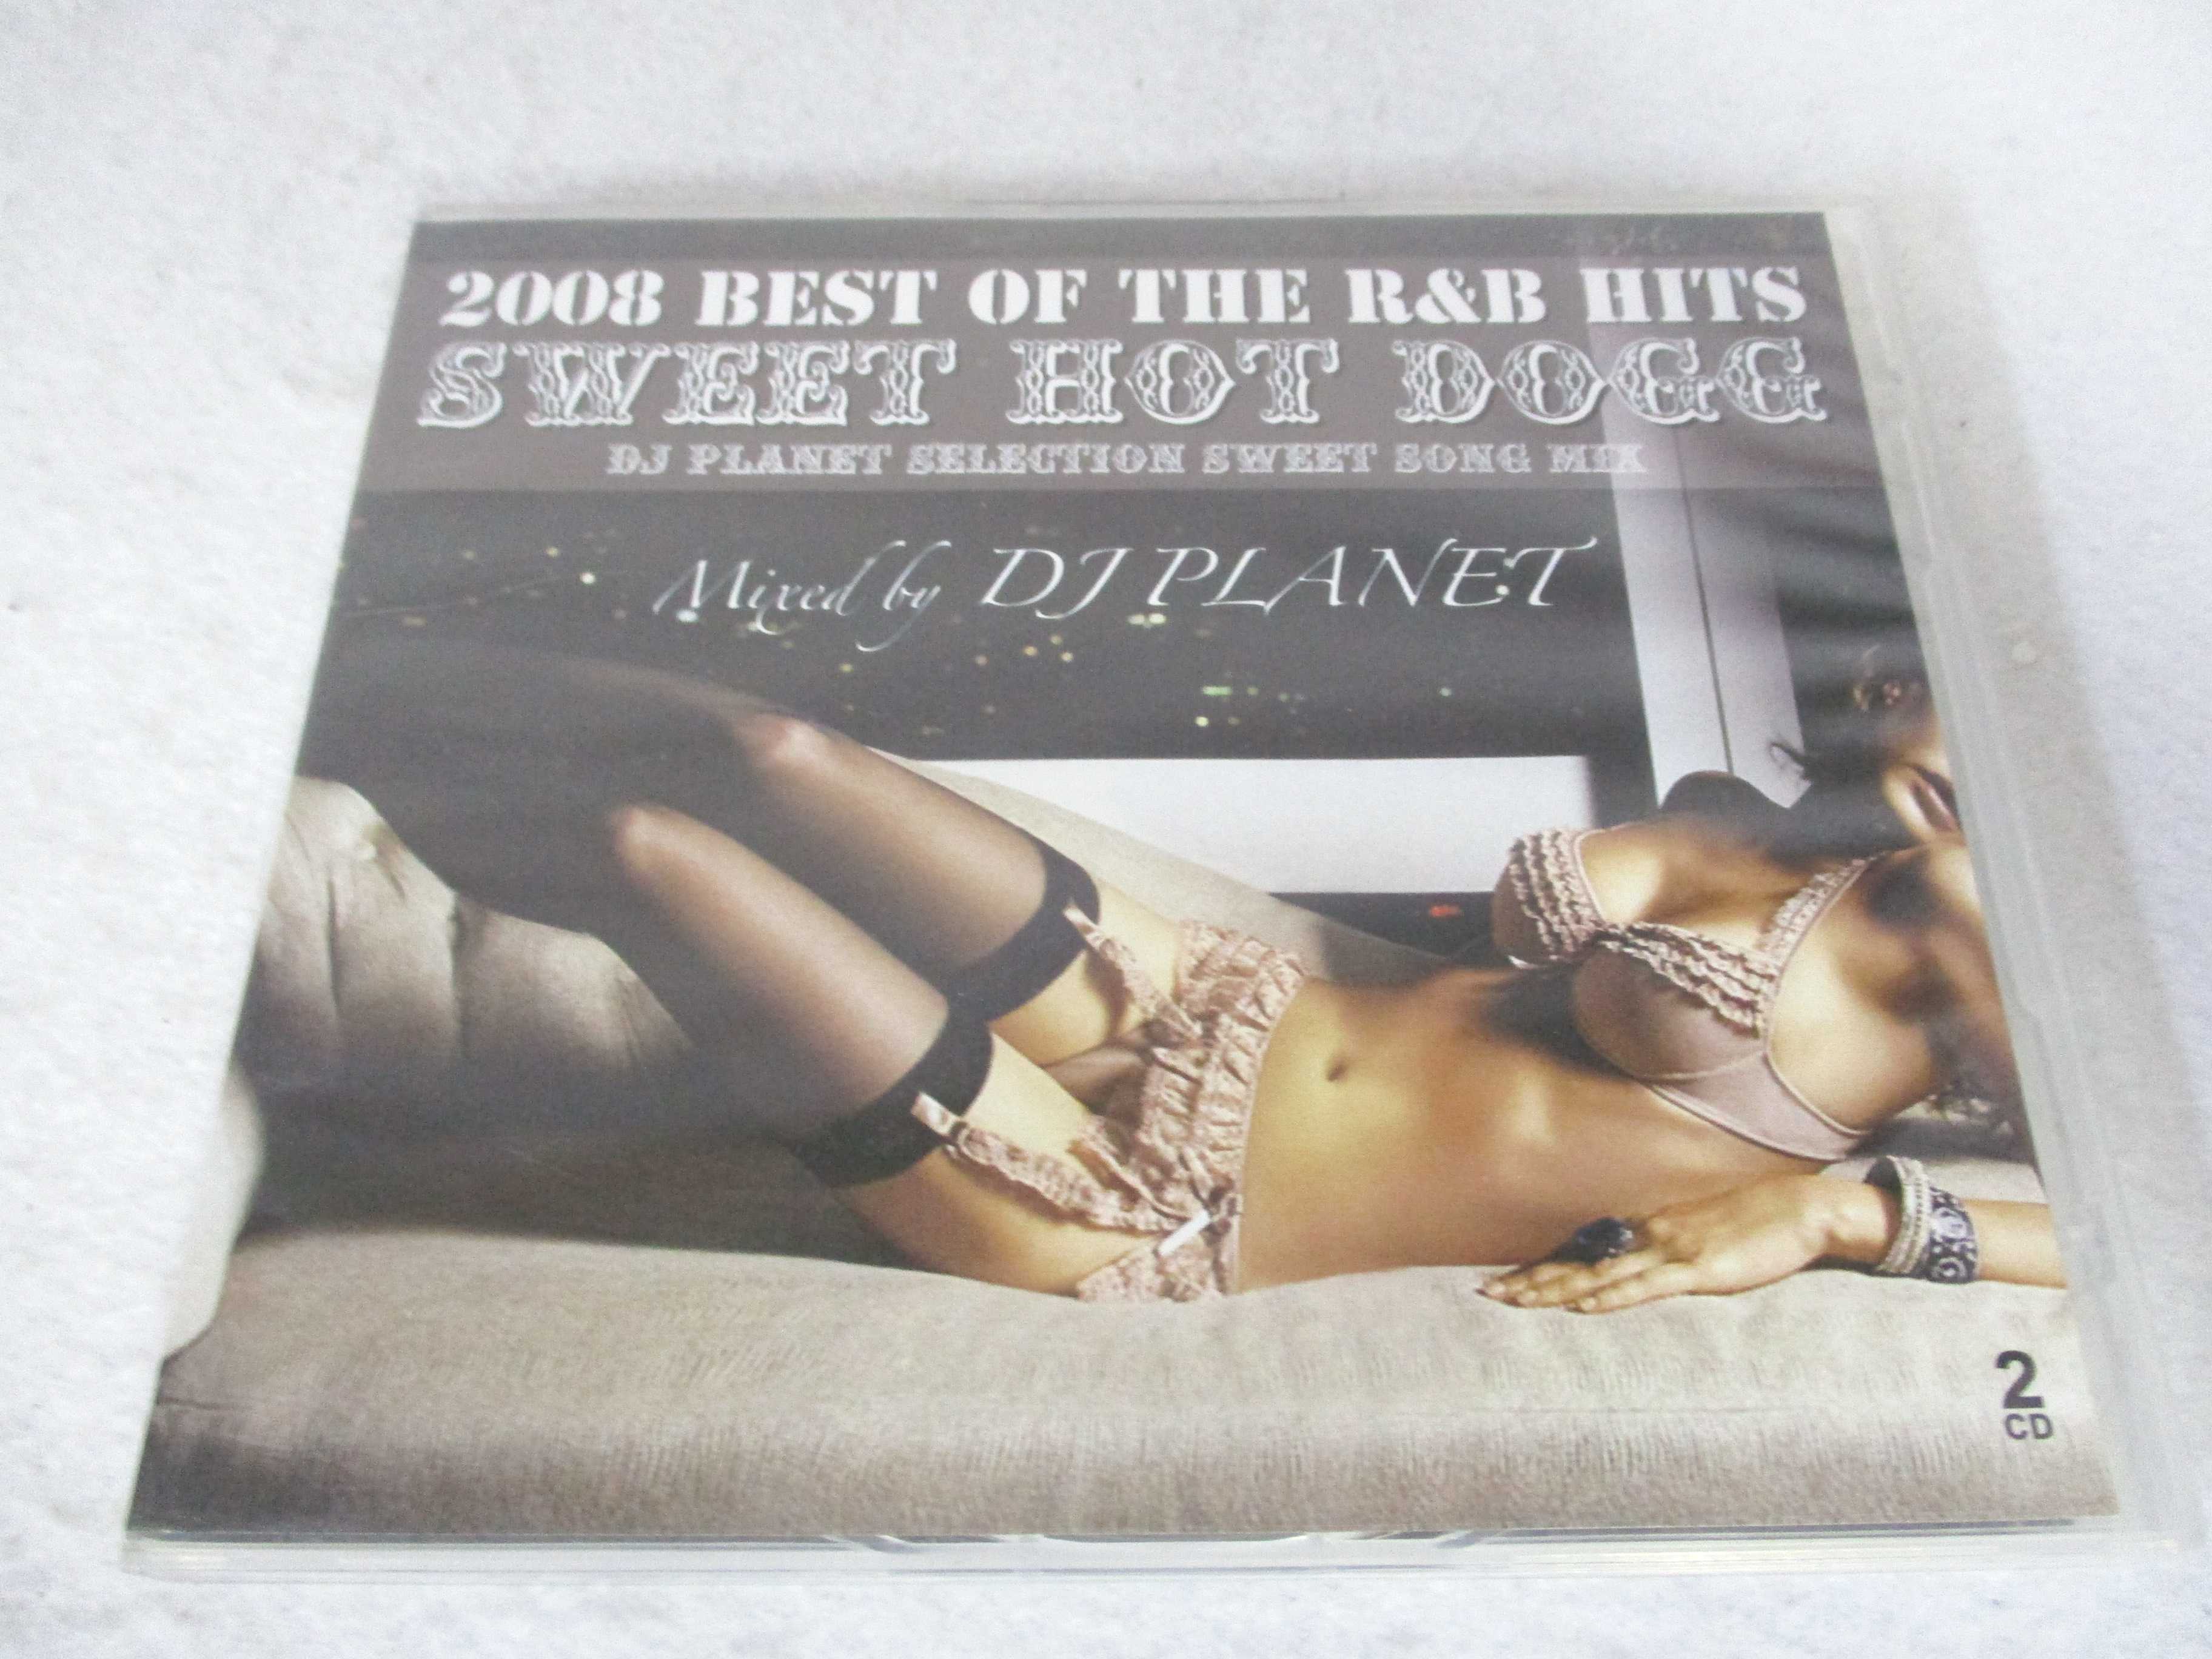 AC02245 yÁz yCDz 2008 BEST OF THE R&B HITS SWEET HOT DOGG/DJ PLANET